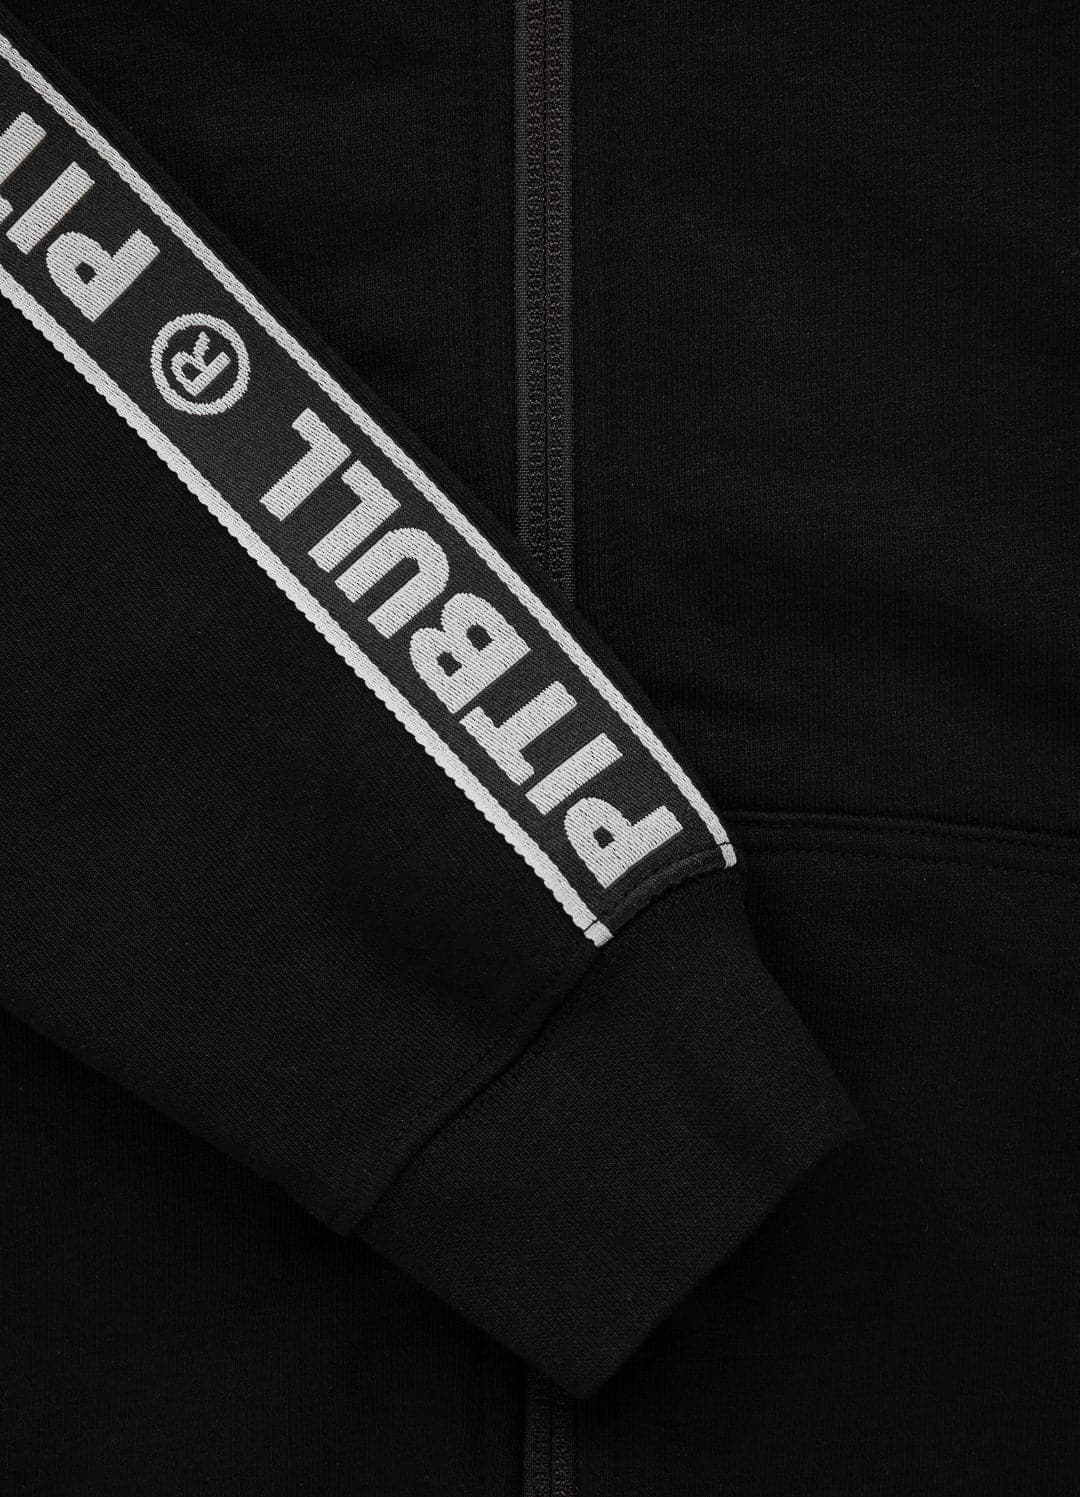 DANDRIDGE Kids dark navy zip hoodie - Pitbull West Coast International Store 